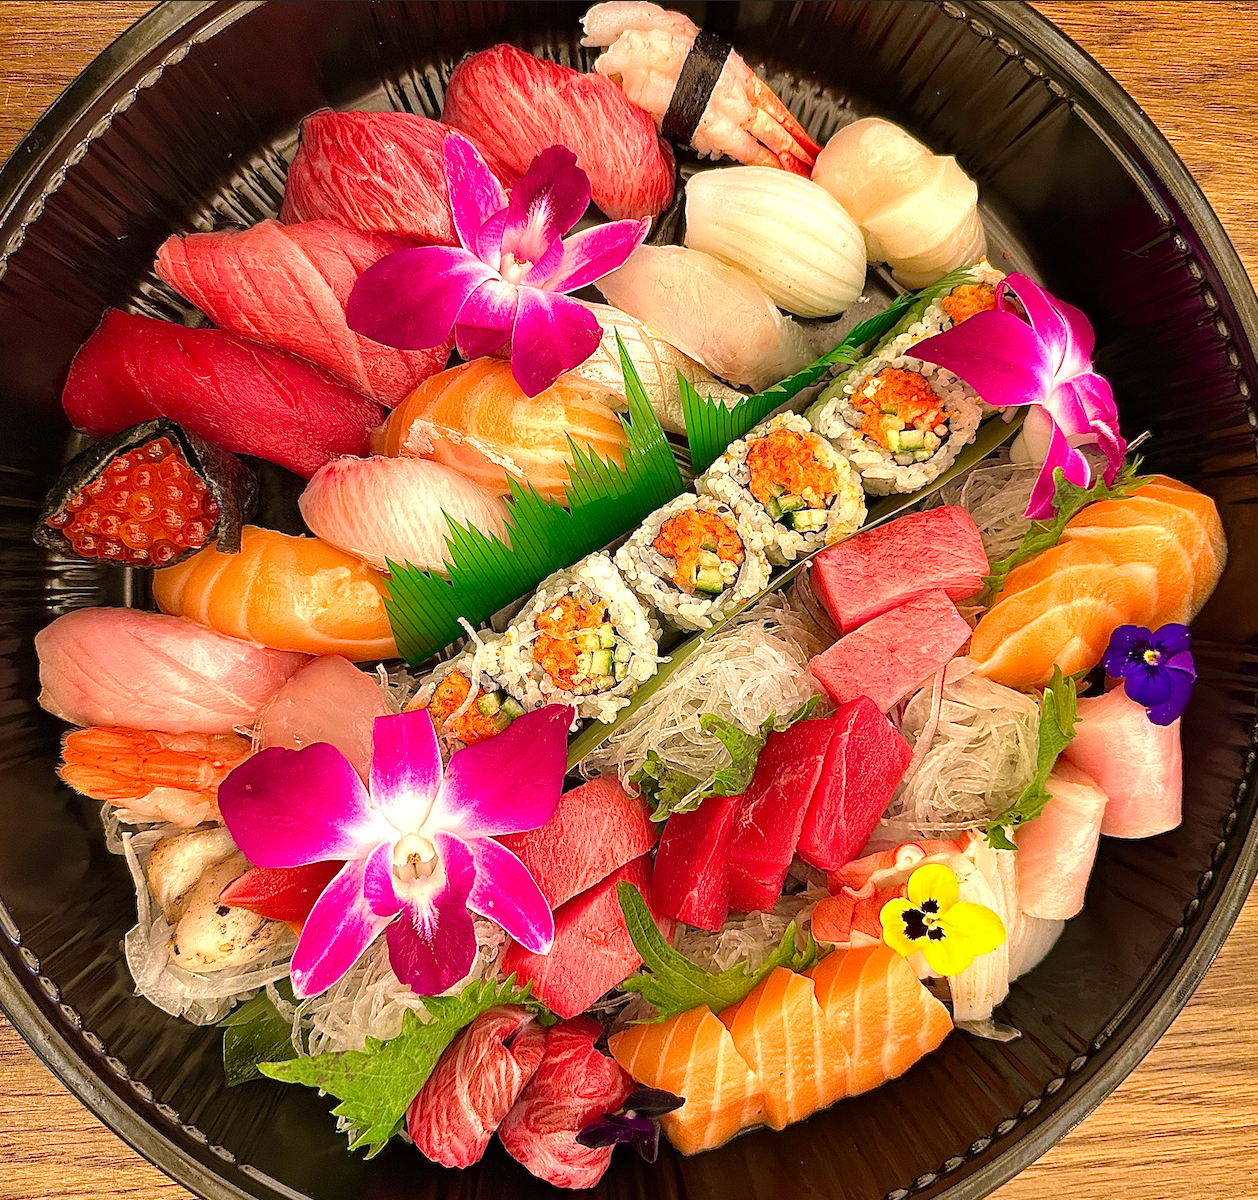 B. Sushi 15pcs + Sashimi 15pcs + 1 Roll (California or Spicy Tuna)